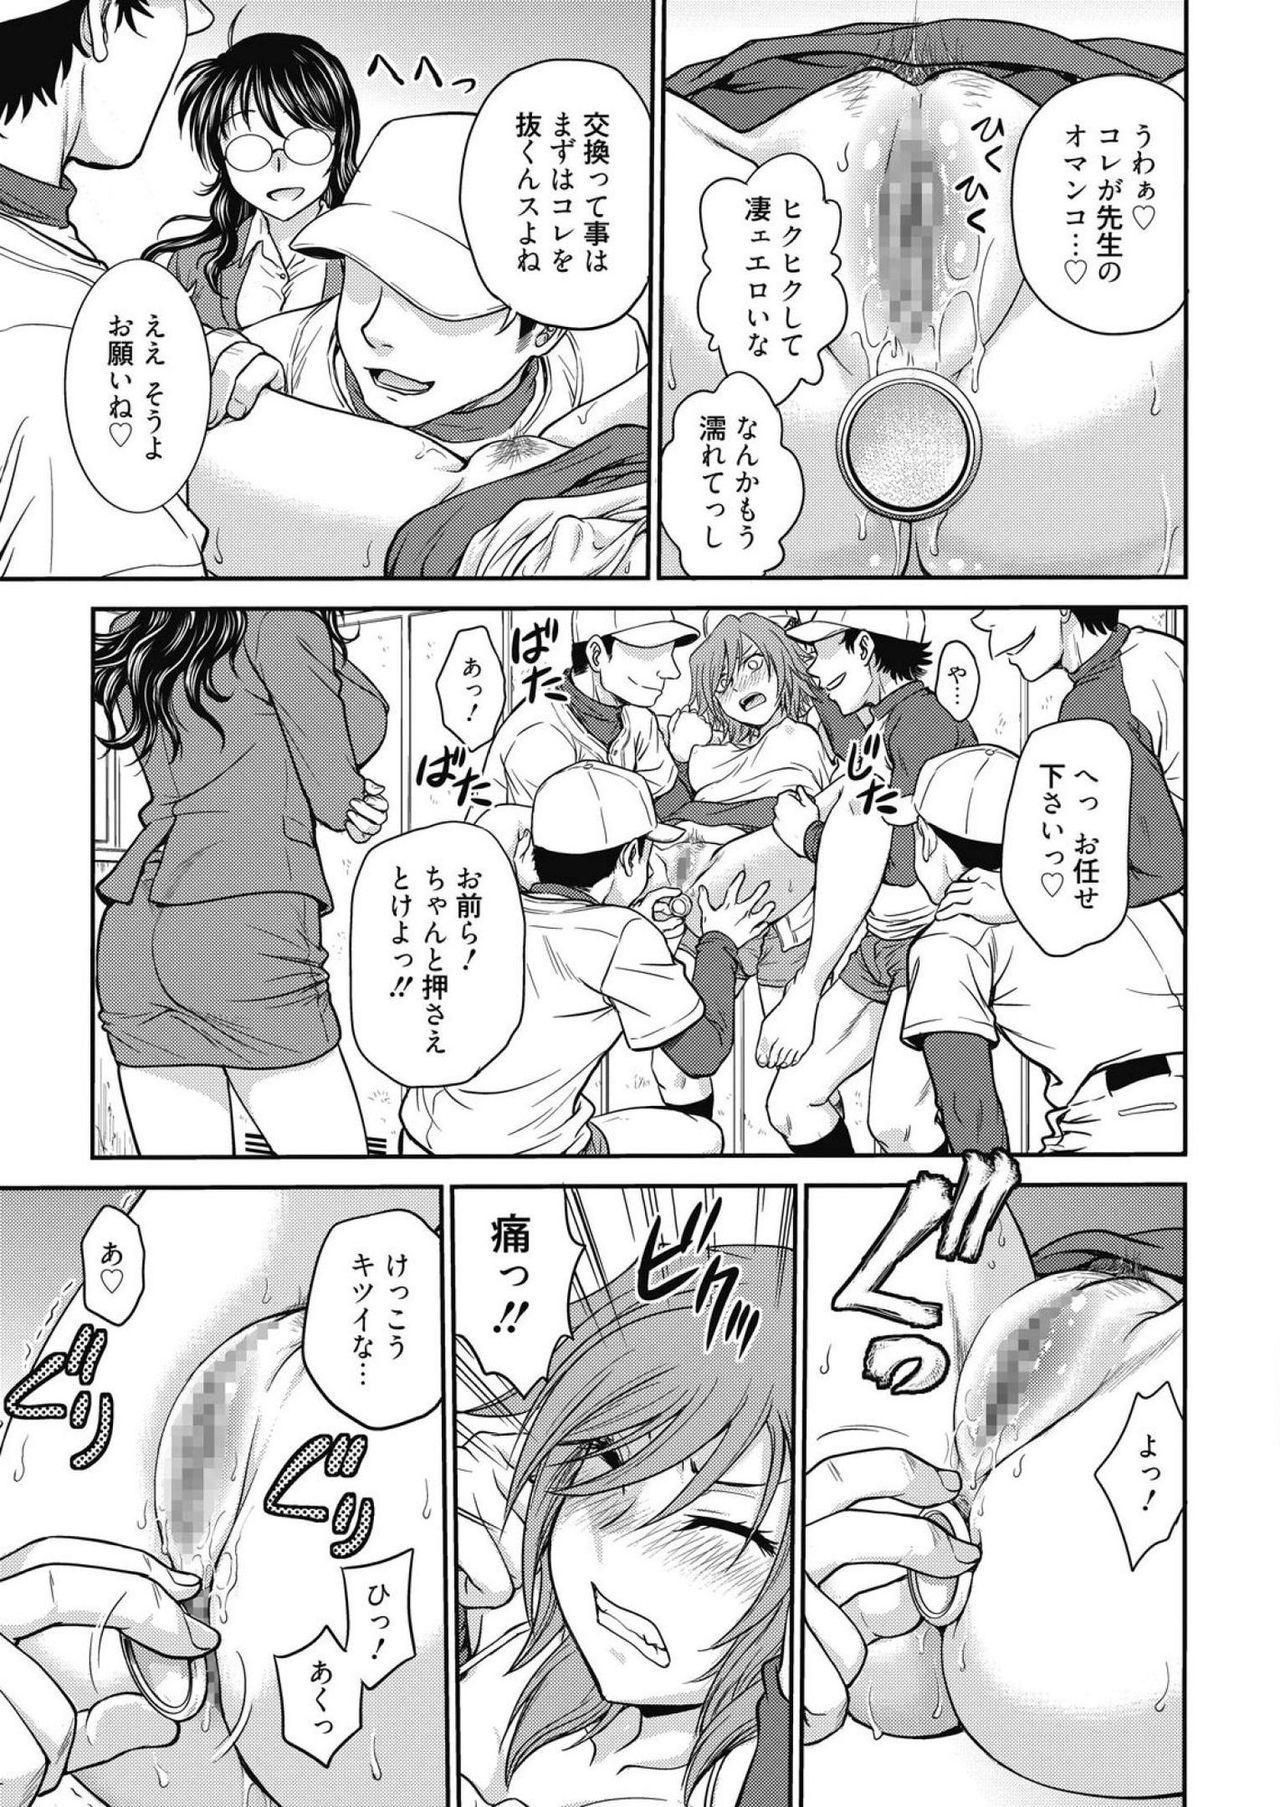 Hairy Web Manga Bangaichi Vol. 14 Roleplay - Page 7